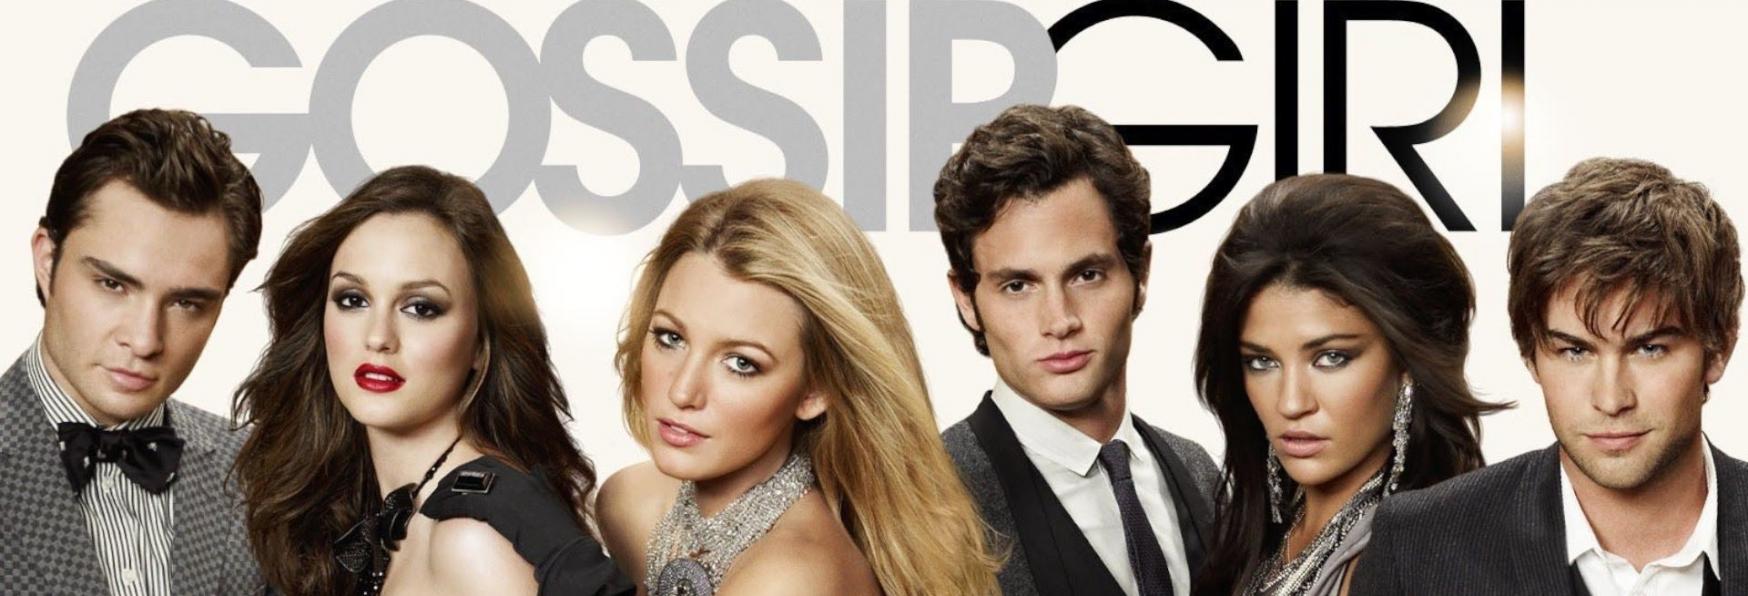 Gossip Girl: Elizabeth Lail farà parte del Cast della Serie TV Reboot